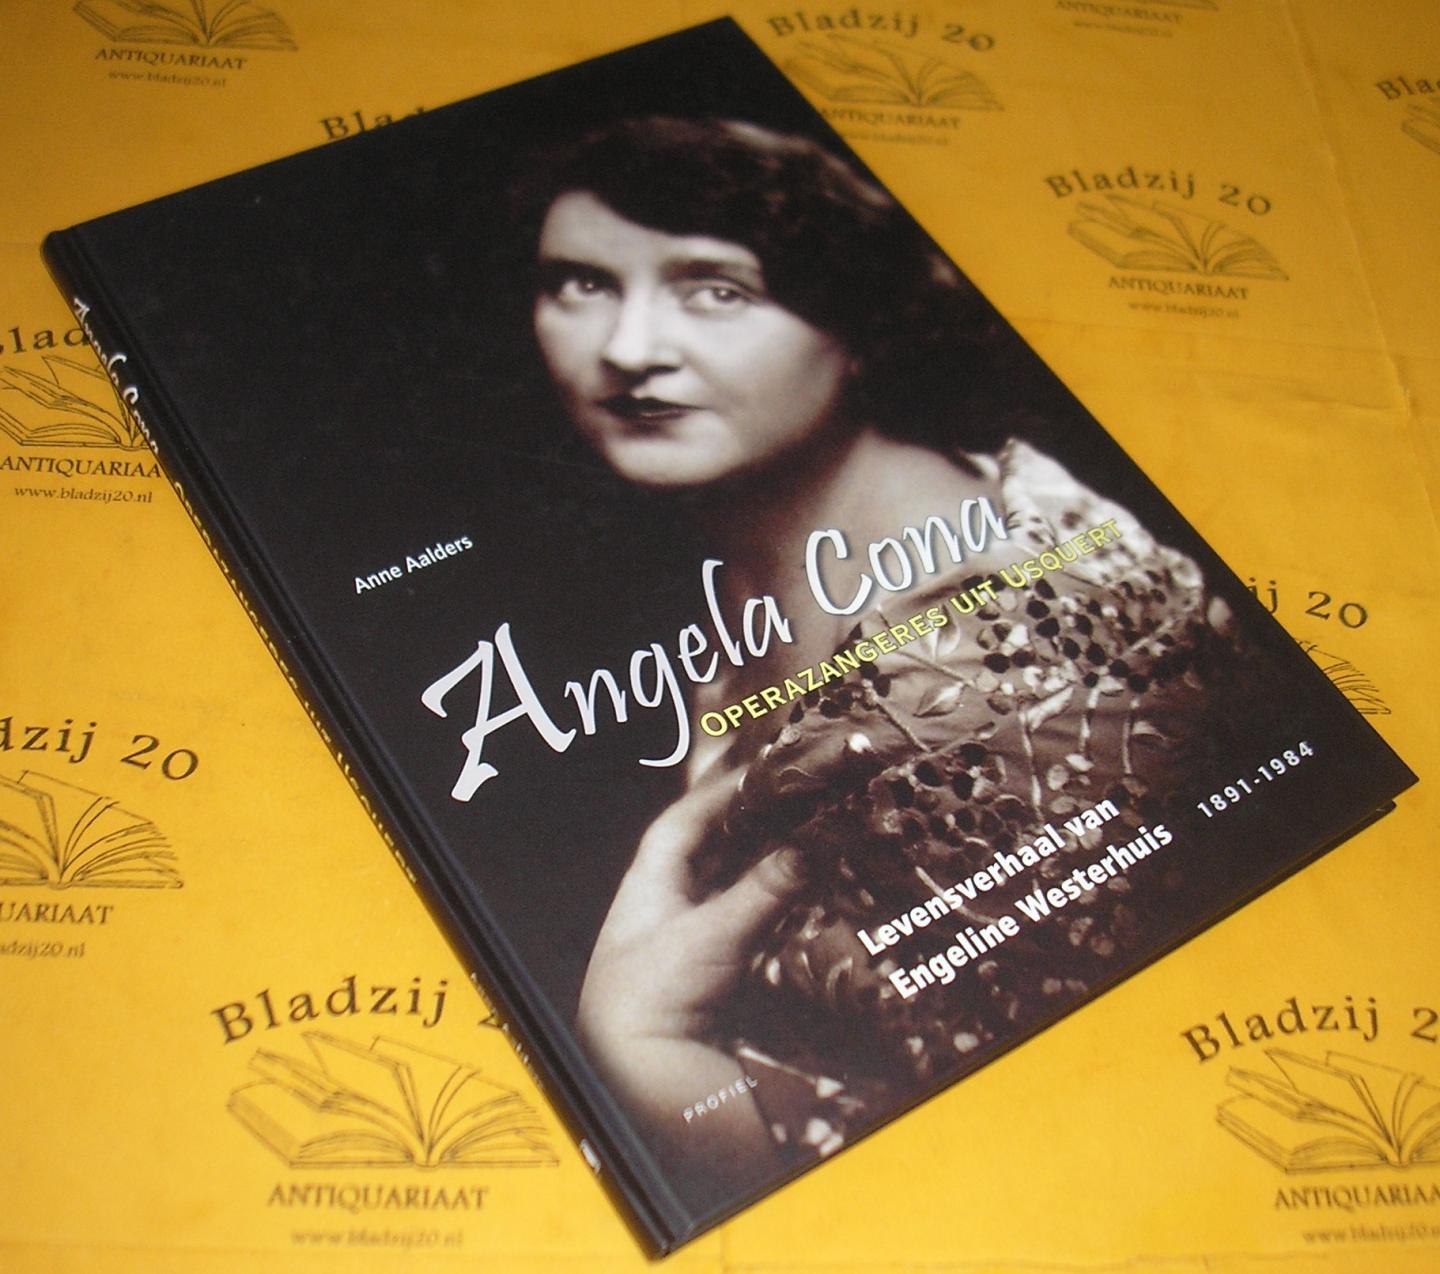 Aalders, Anne. - Angela Cona, operazangeres uit Usquert. Levensverhaal van Engeline Westerhuis 1891-1984.